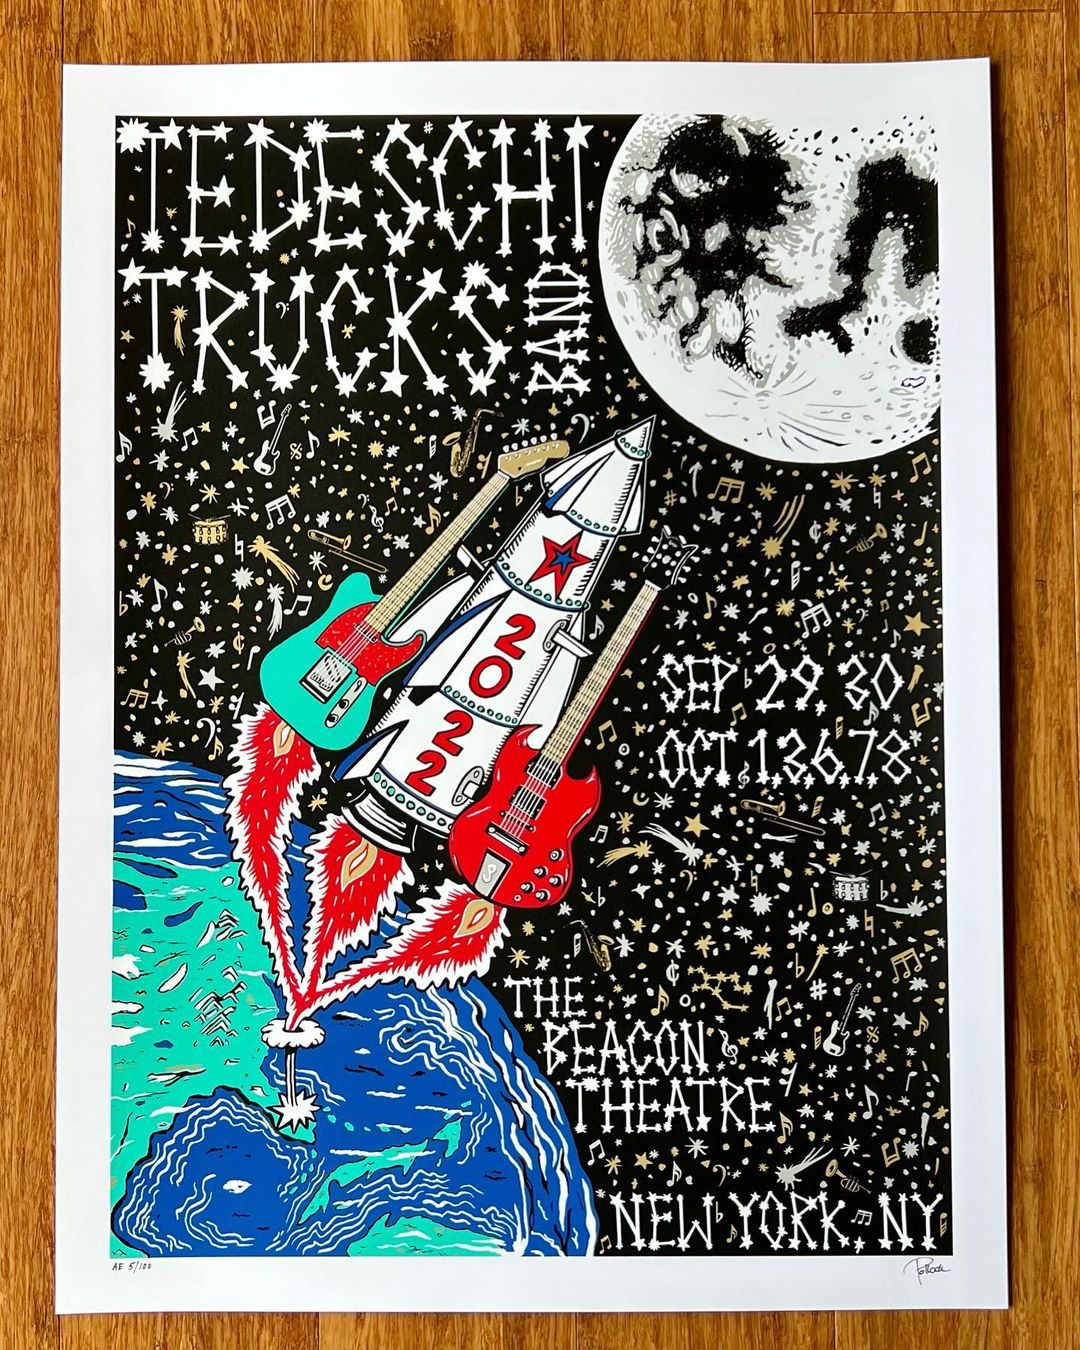 Jim Pollock "Tedeschi Trucks Band @ The Beacon Theatre" AE